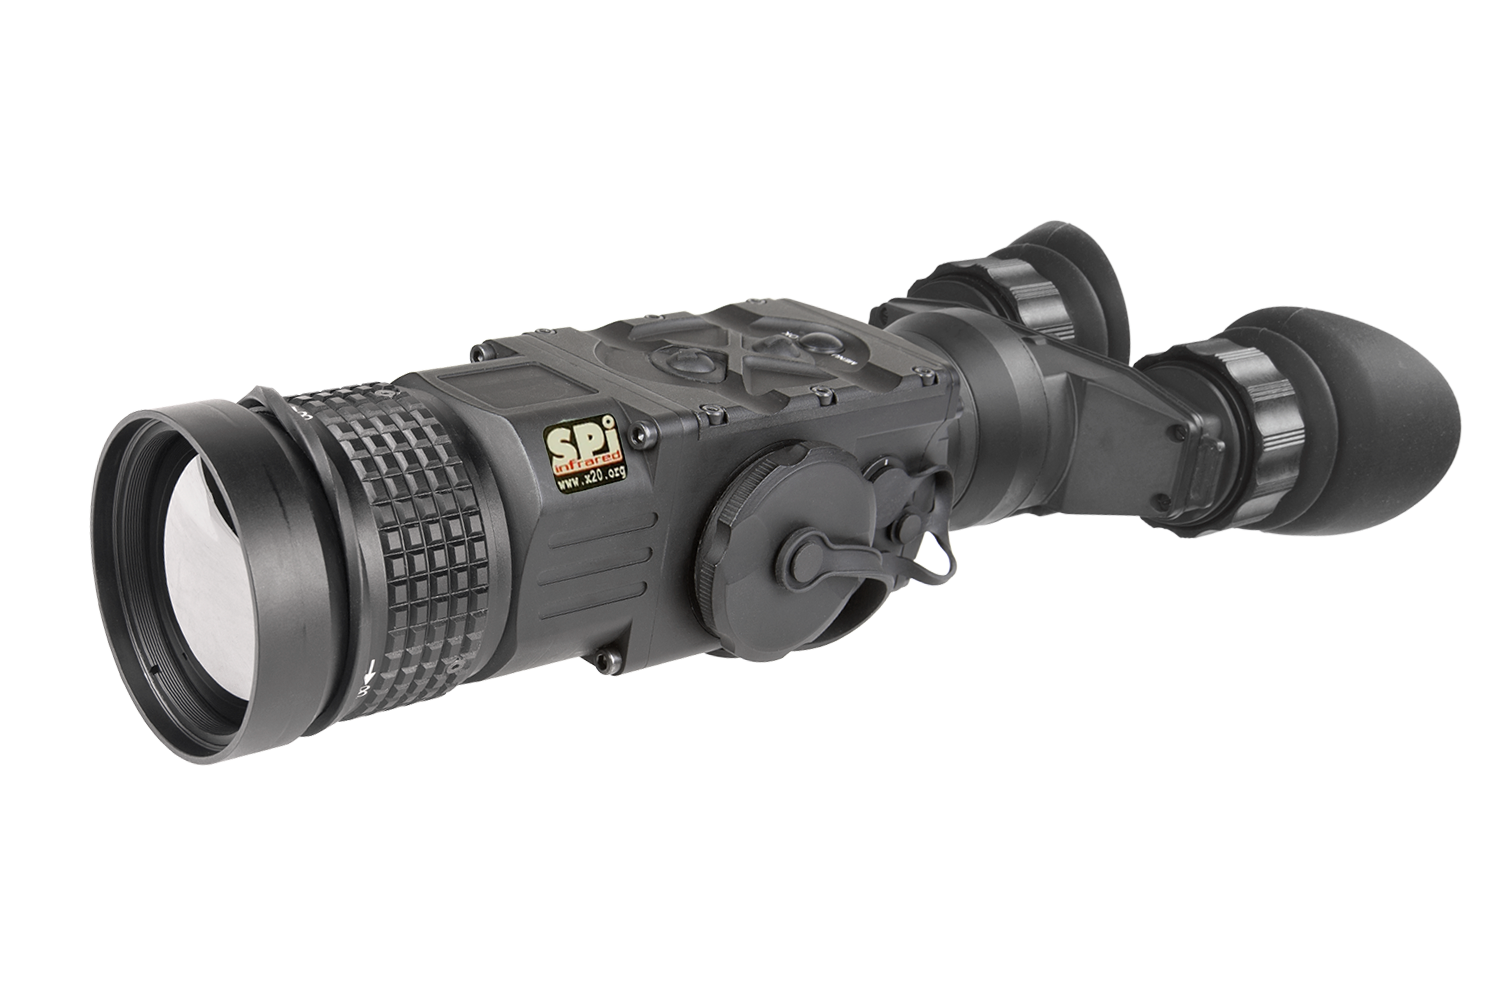 Thermal Imaging binocular military grade durable